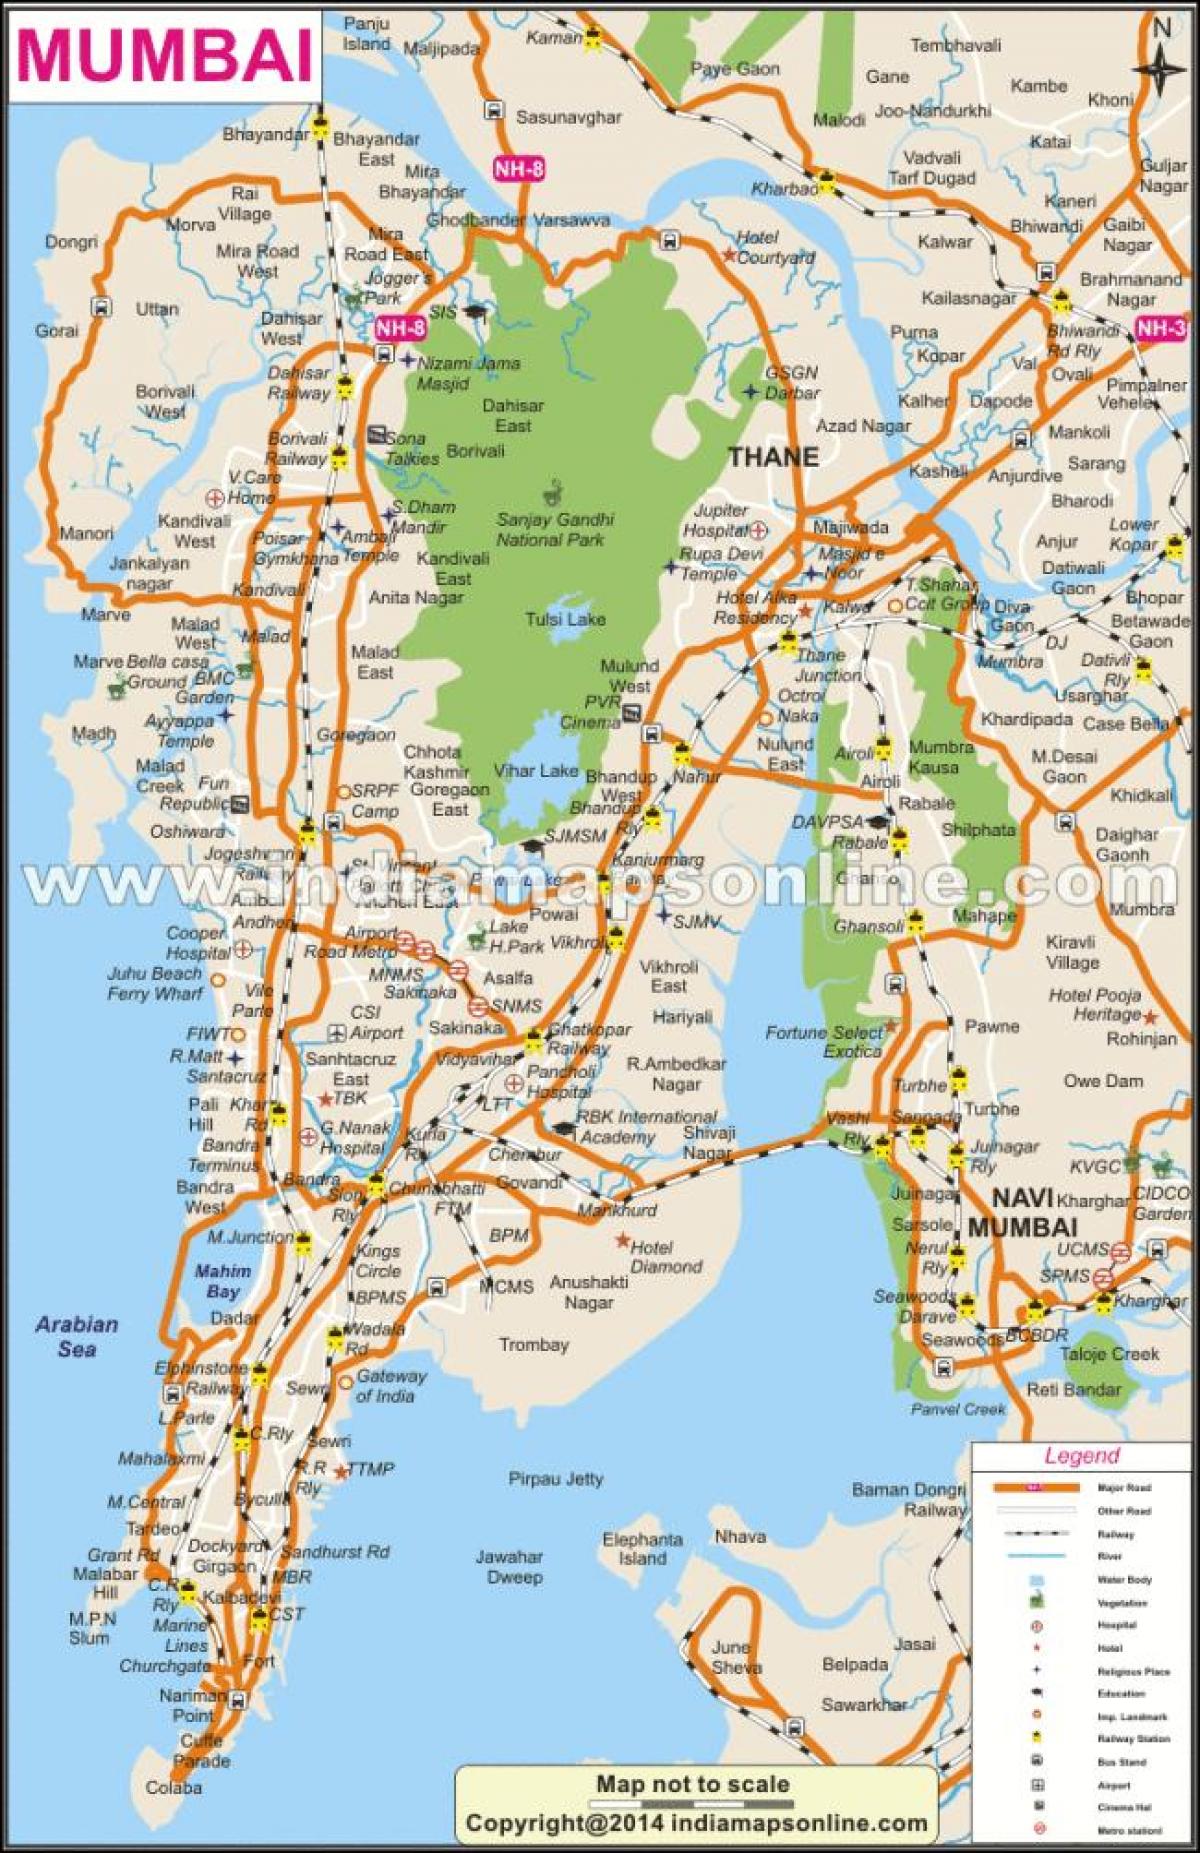 térkép Mumbai helyi